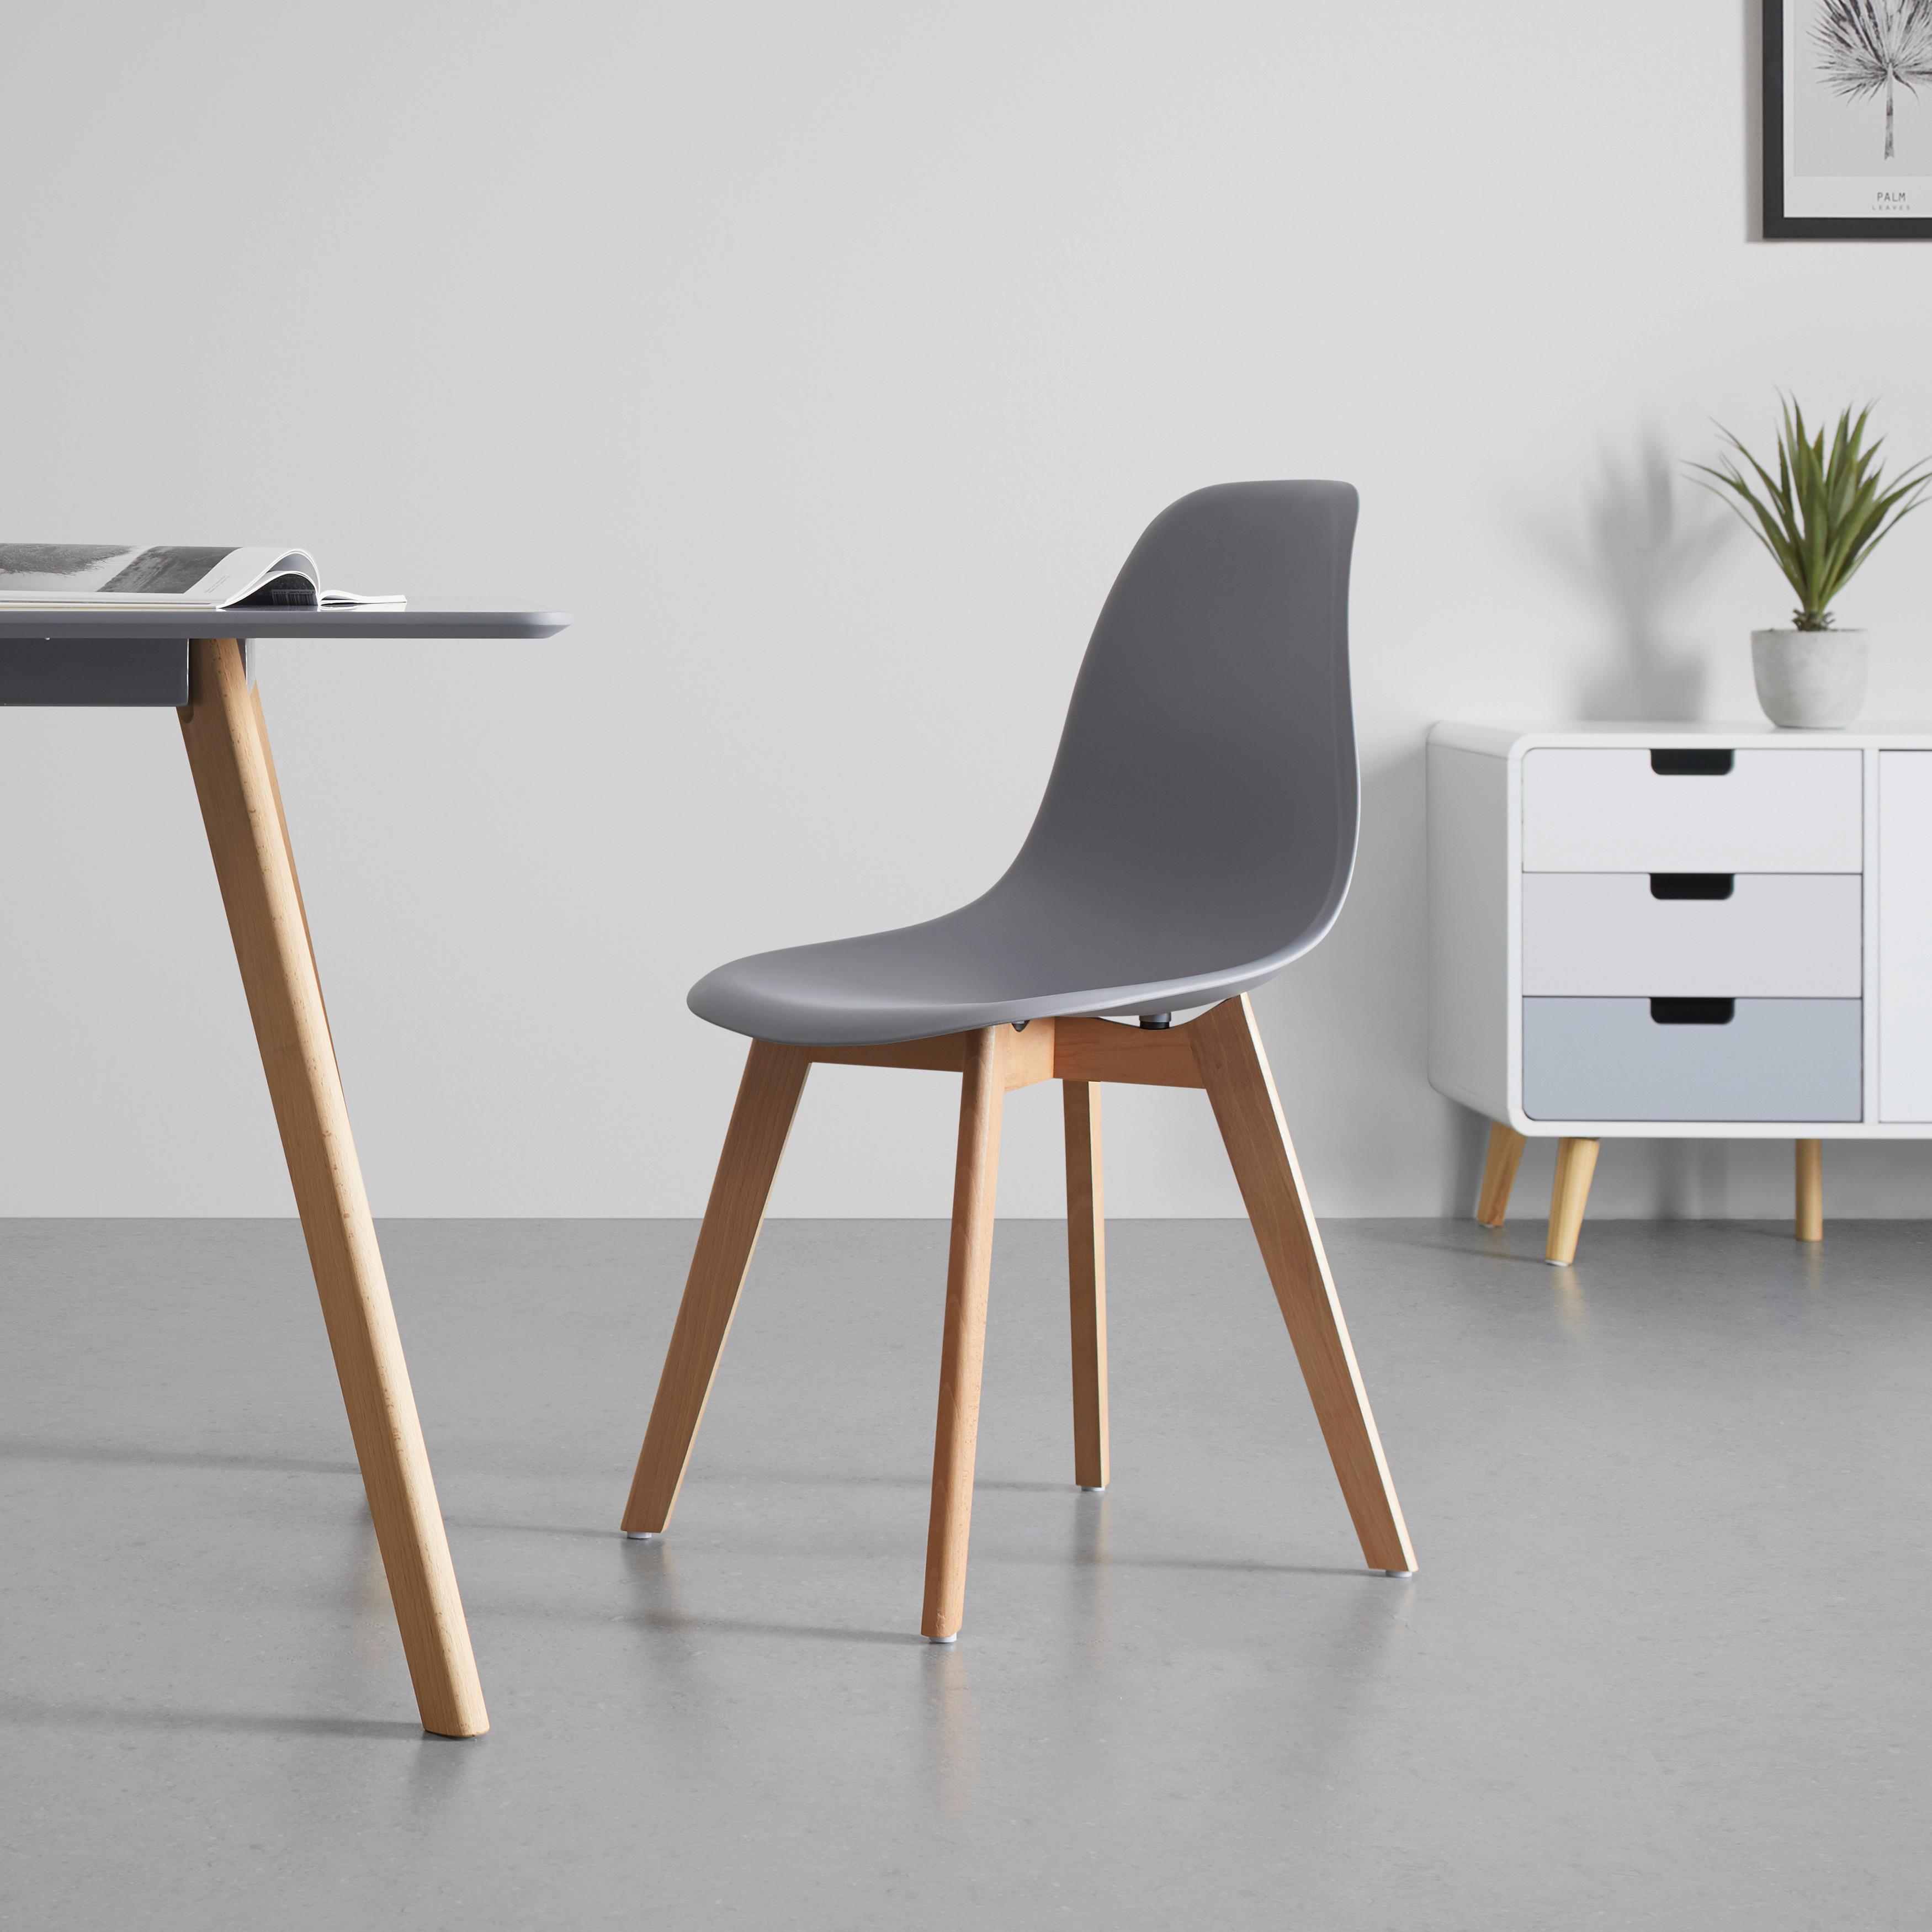 Jídelní Židle Frieda - šedá/barvy buku, Moderní, dřevo/plast (54/87,50/46cm) - Modern Living